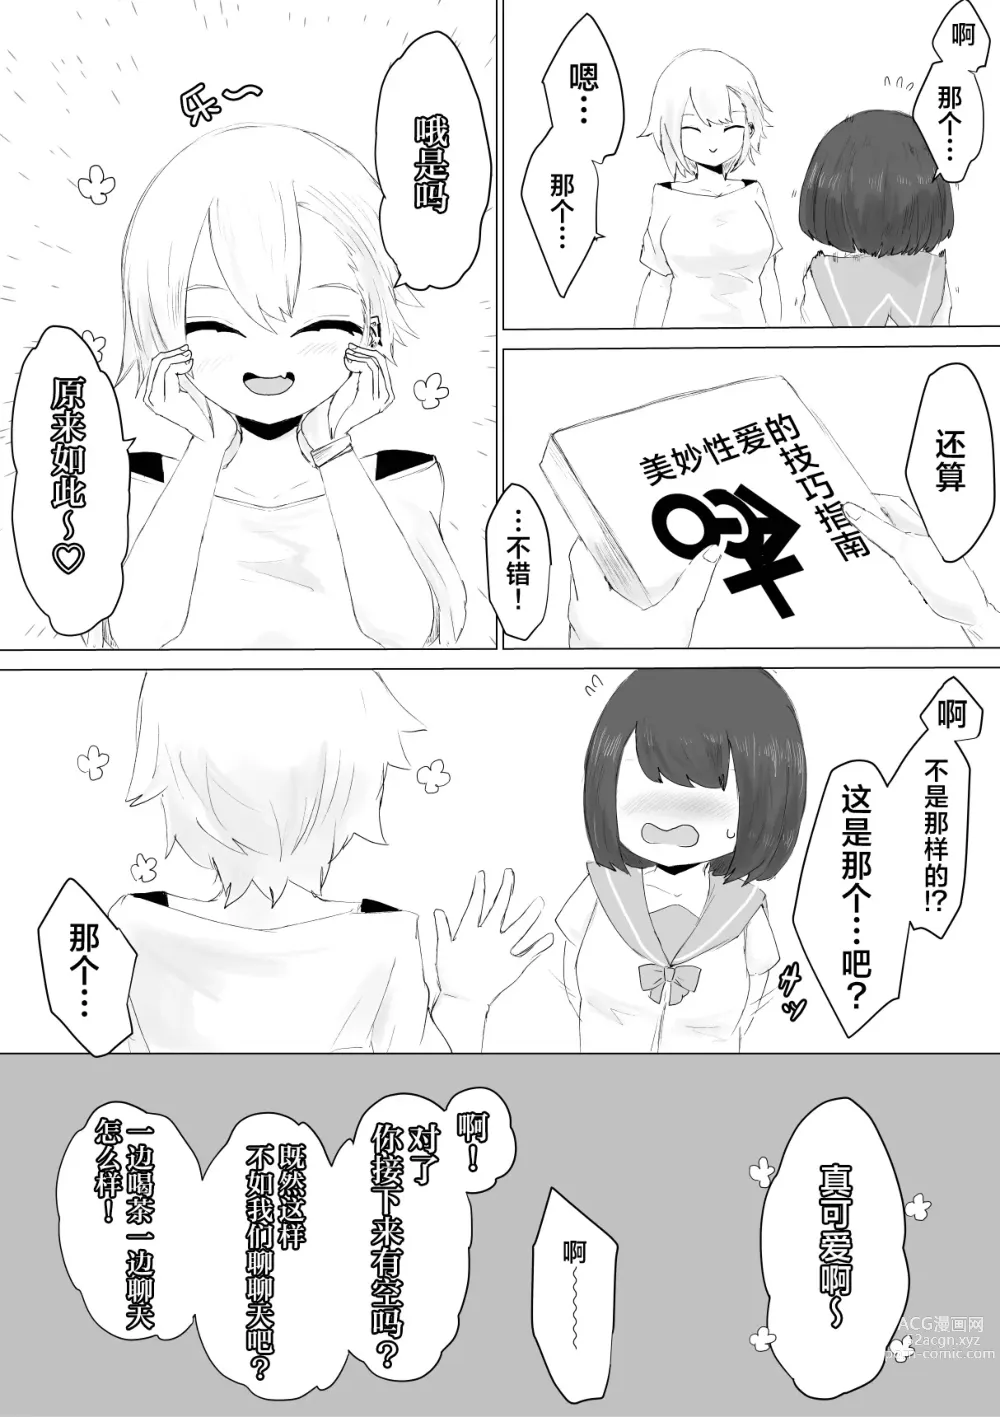 Page 10 of doujinshi 男友君的杂鱼肉棒没法满足我、然后...